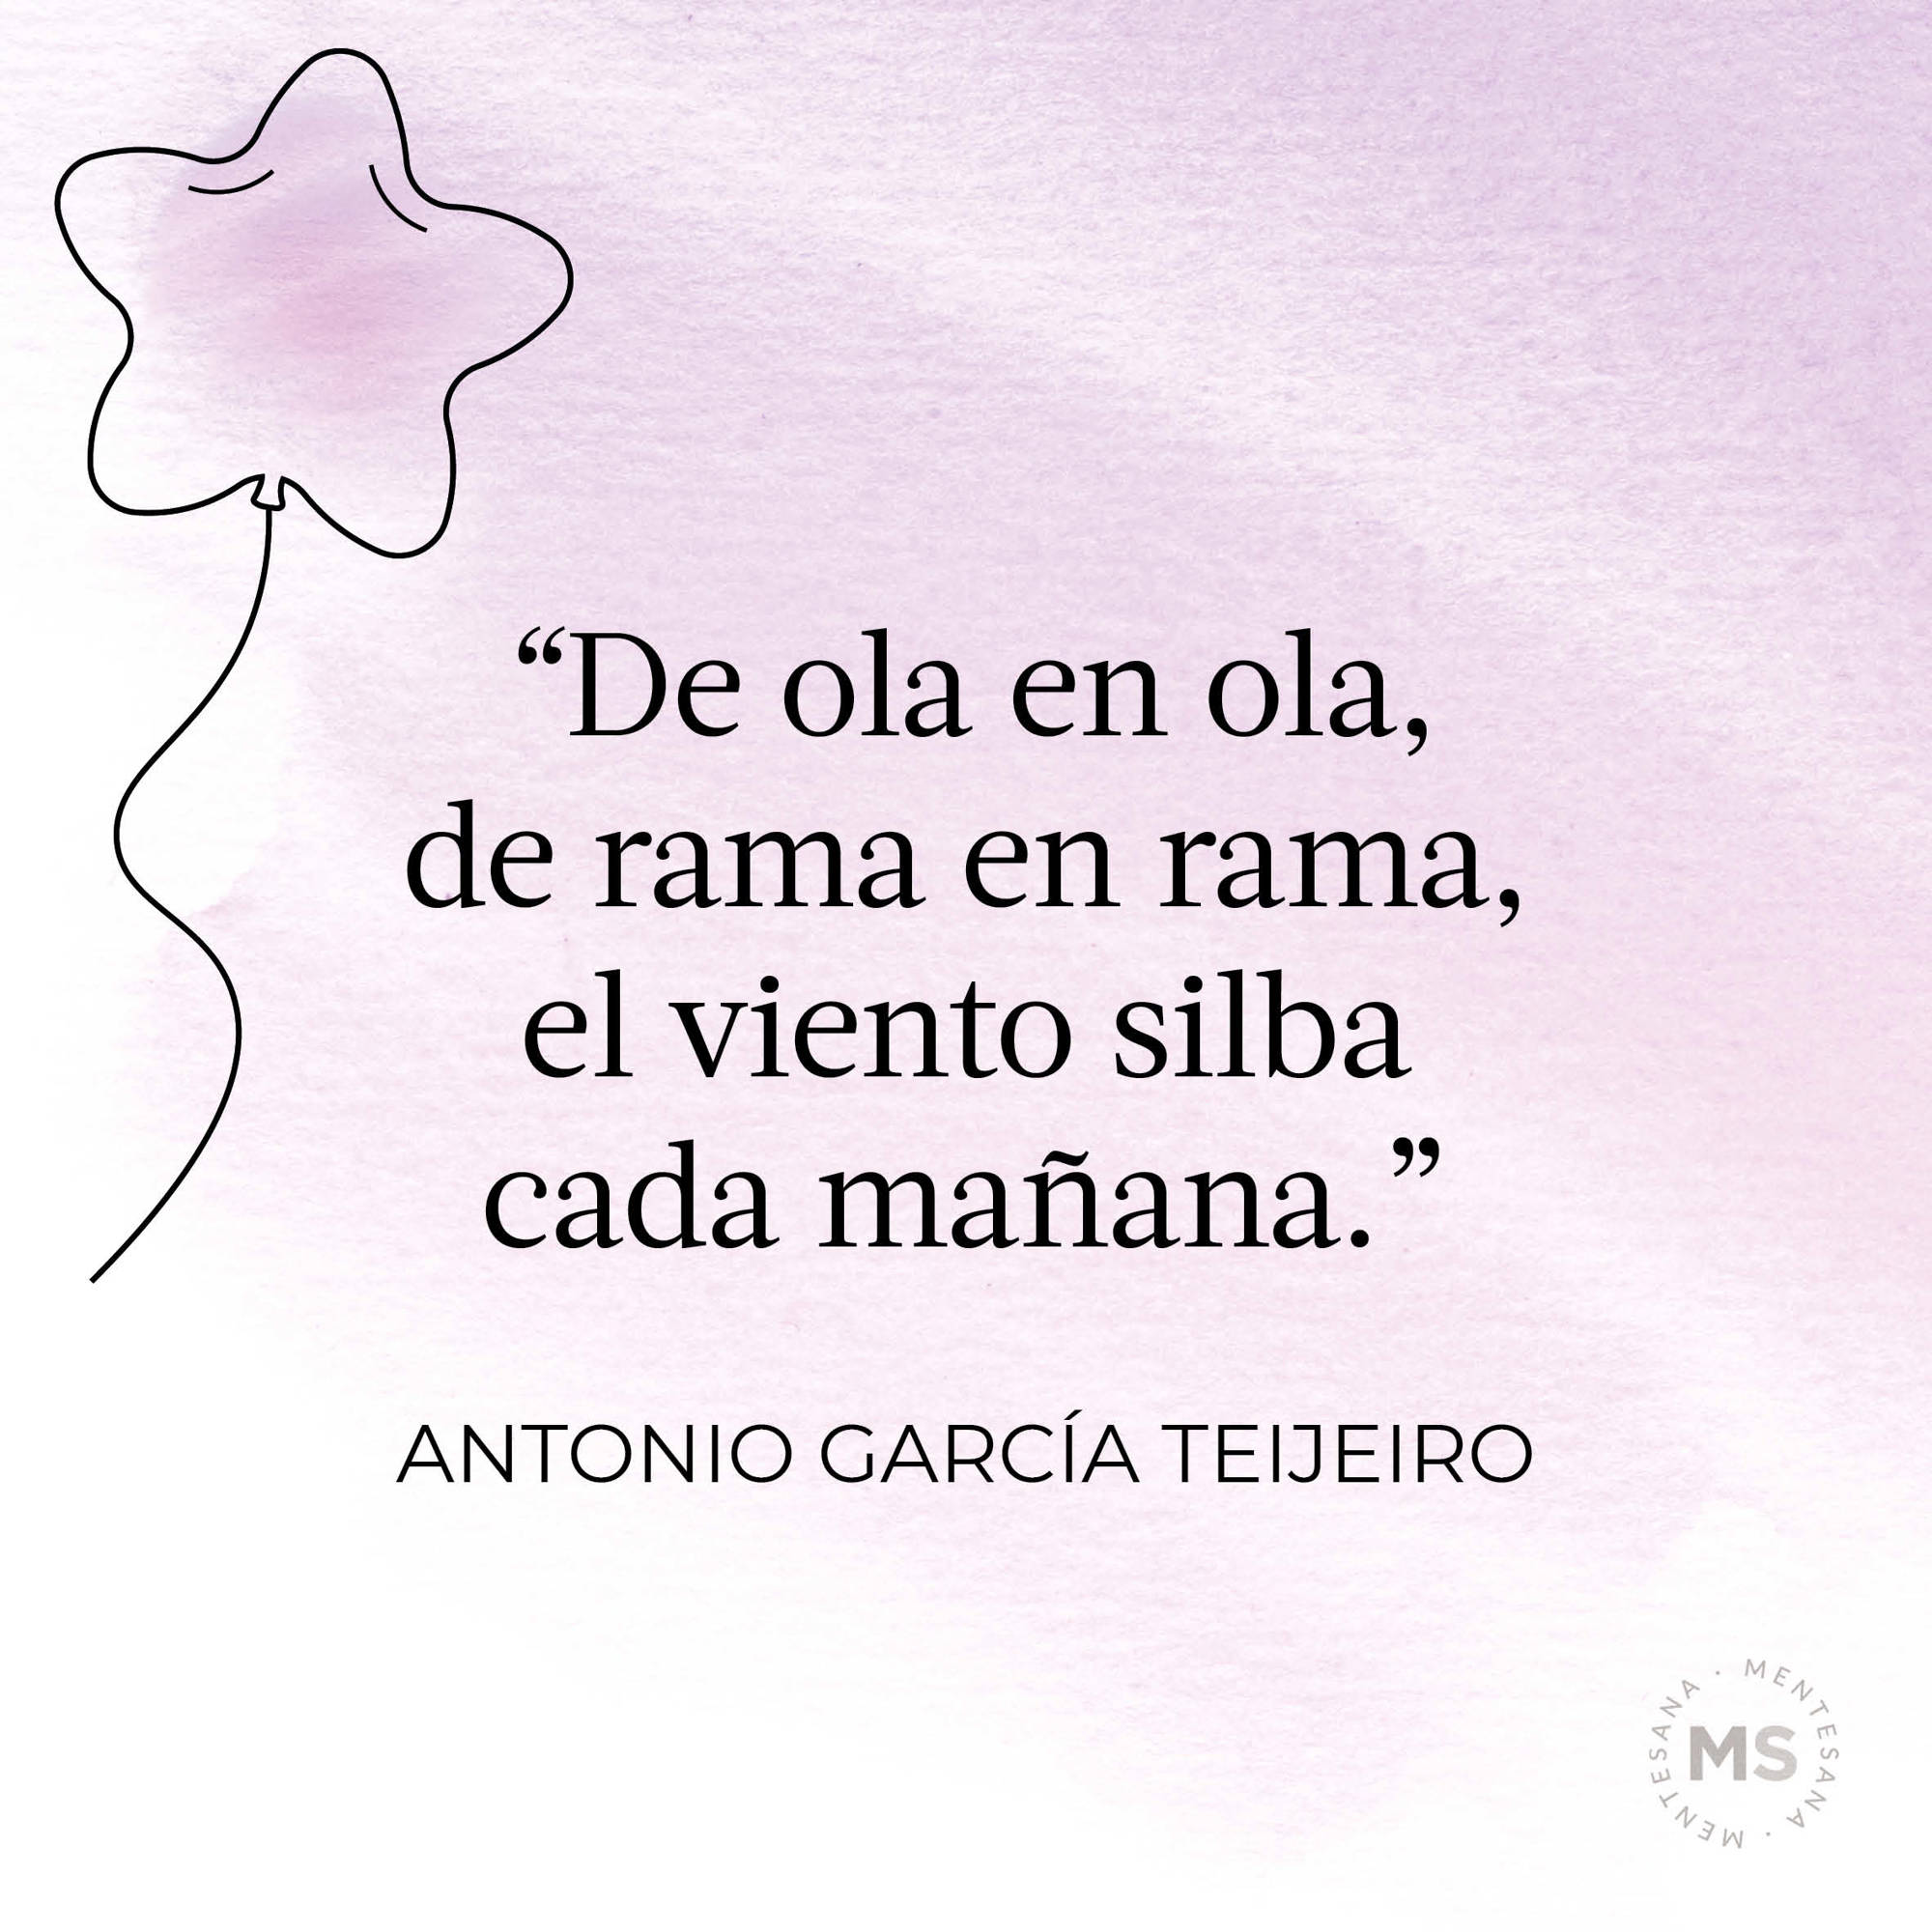 De ola en ola (poema de Antonio García Teijeiro)